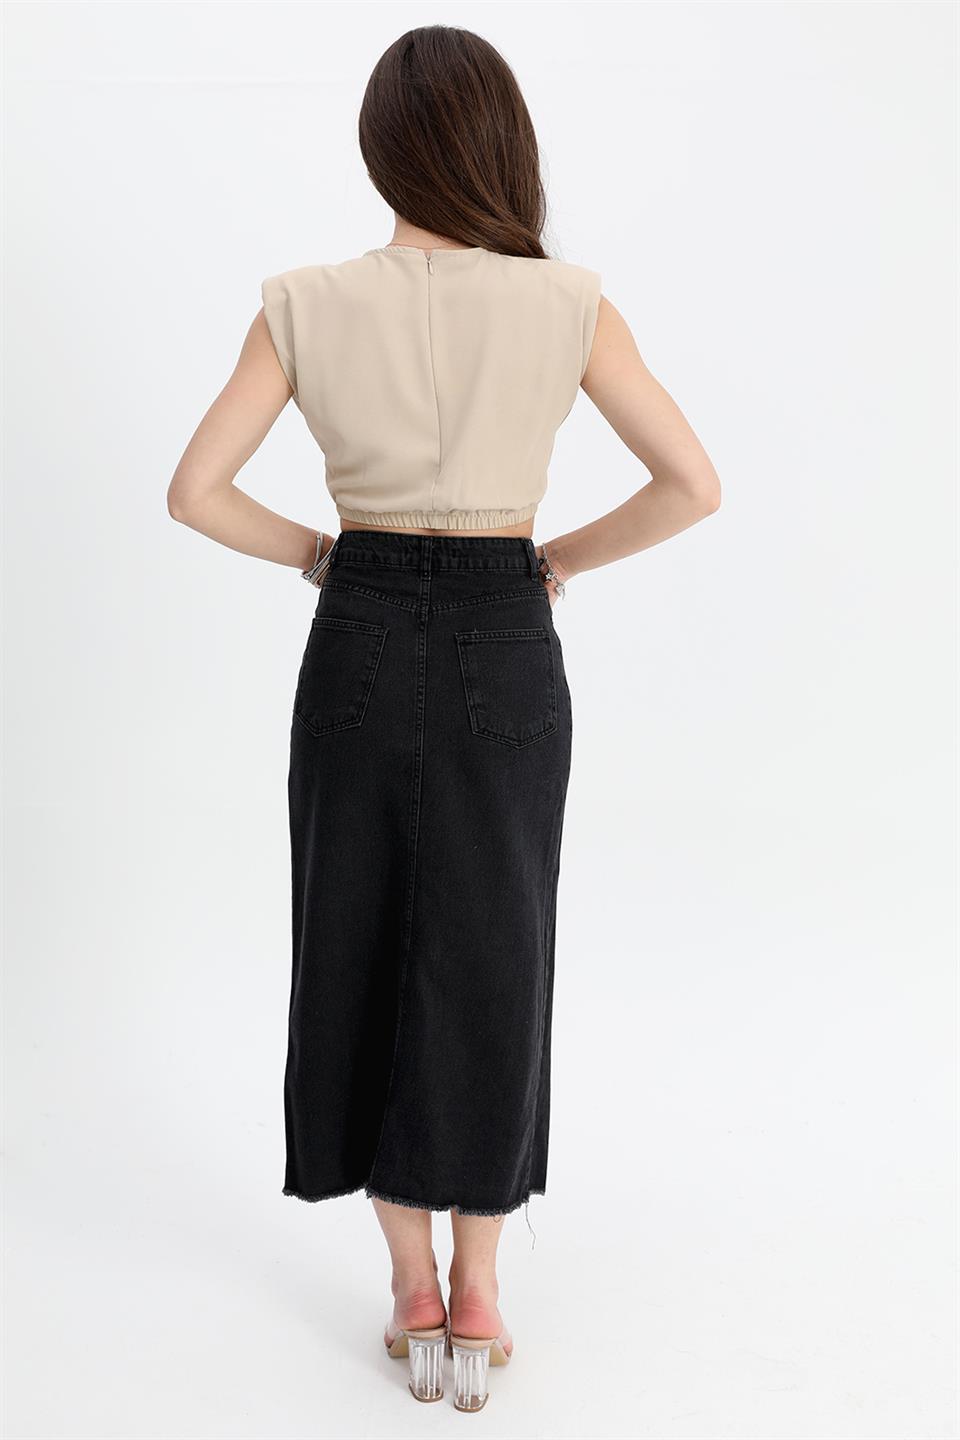 Women's Denim Skirt Front Slit Skirt Tasseled - Black - STREETMODE™